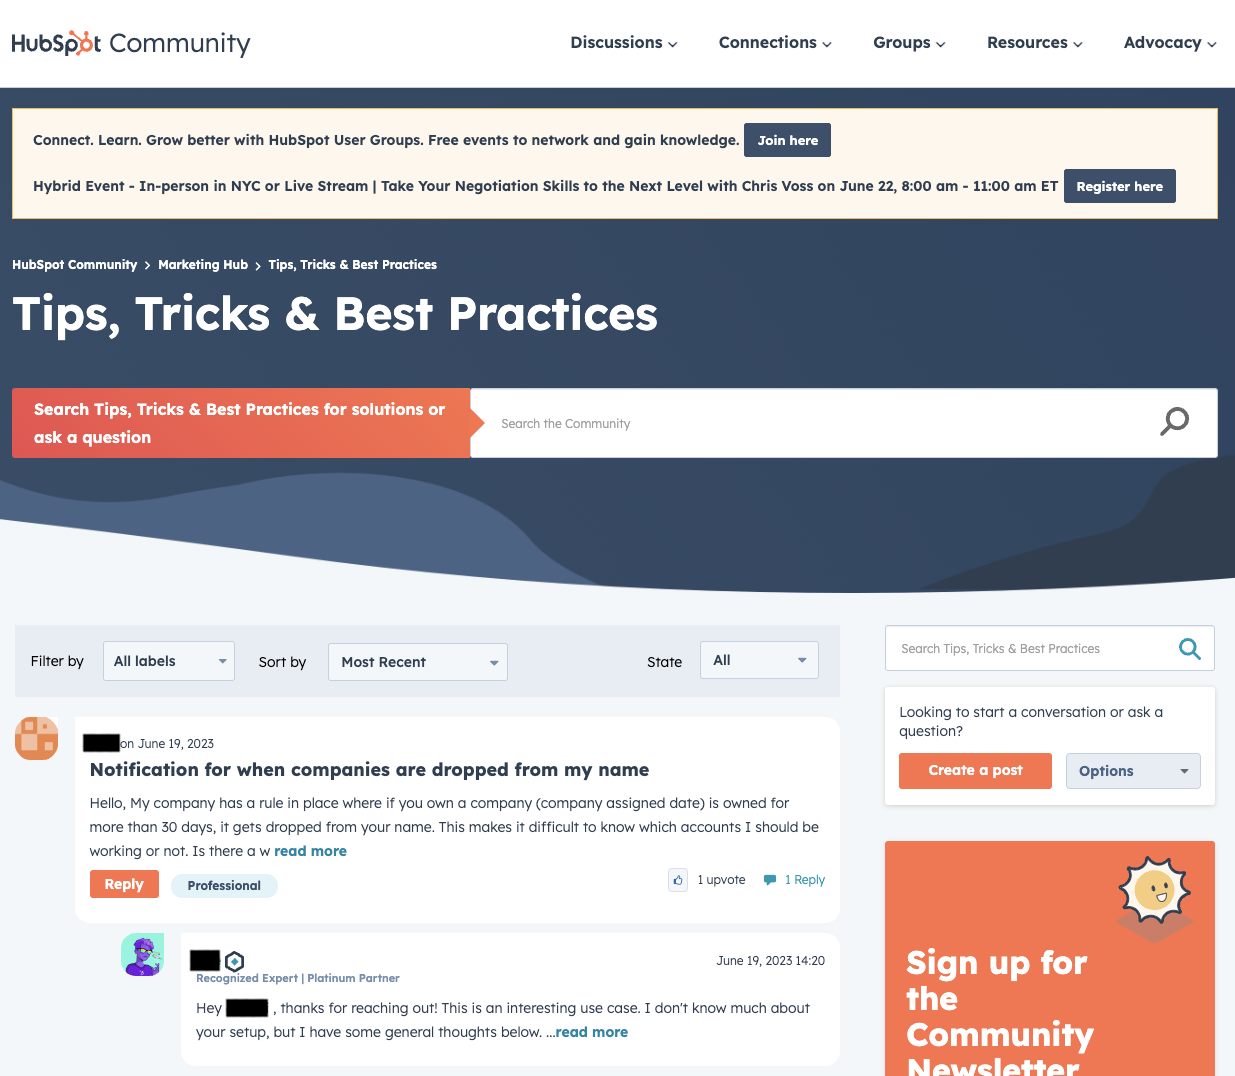 HubSpot’s Tips, Tricks & Best Practices community forum